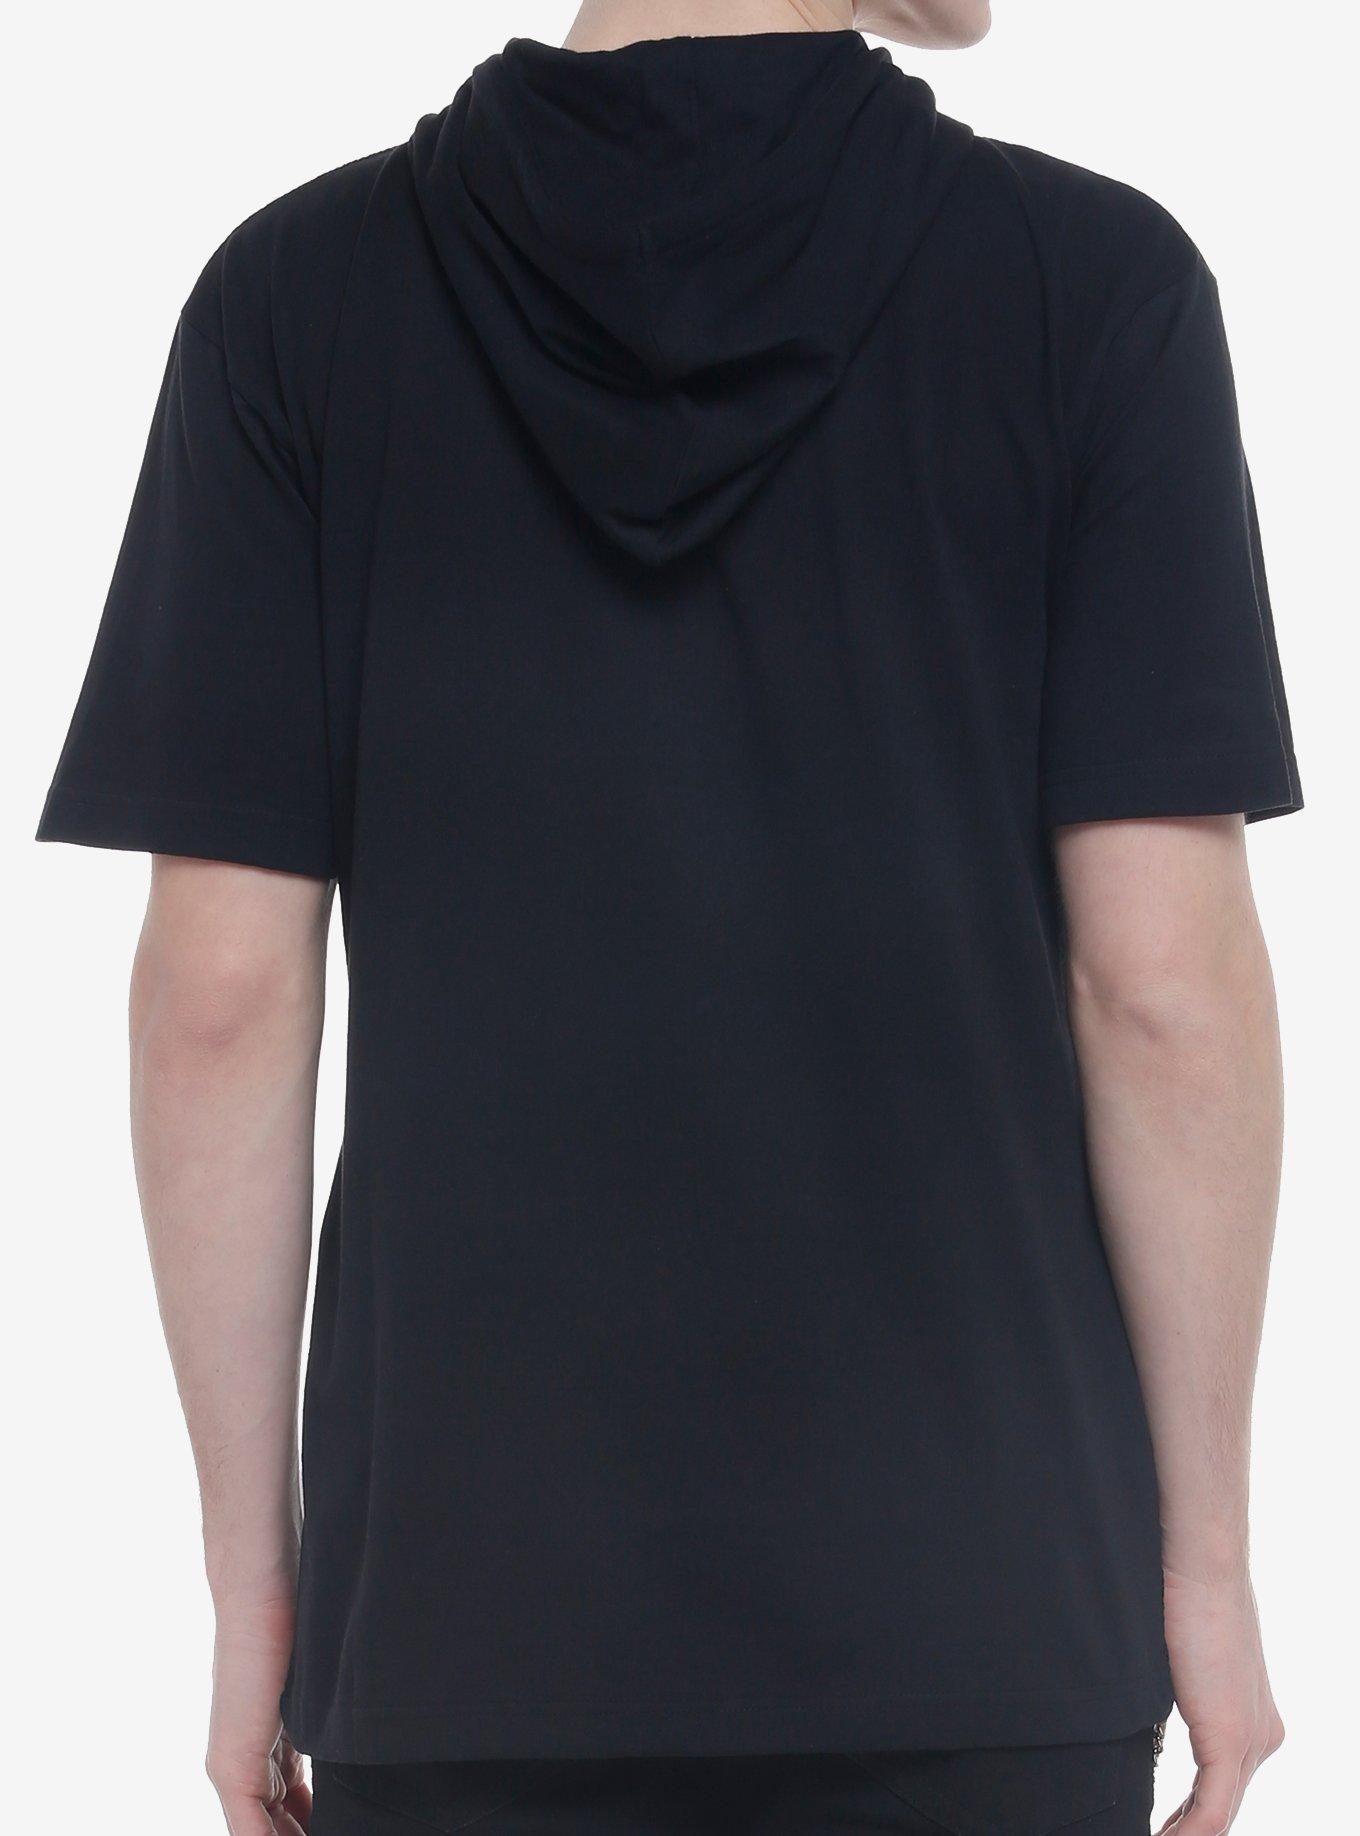 Black Mesh Hooded T-Shirt, BLACK, alternate